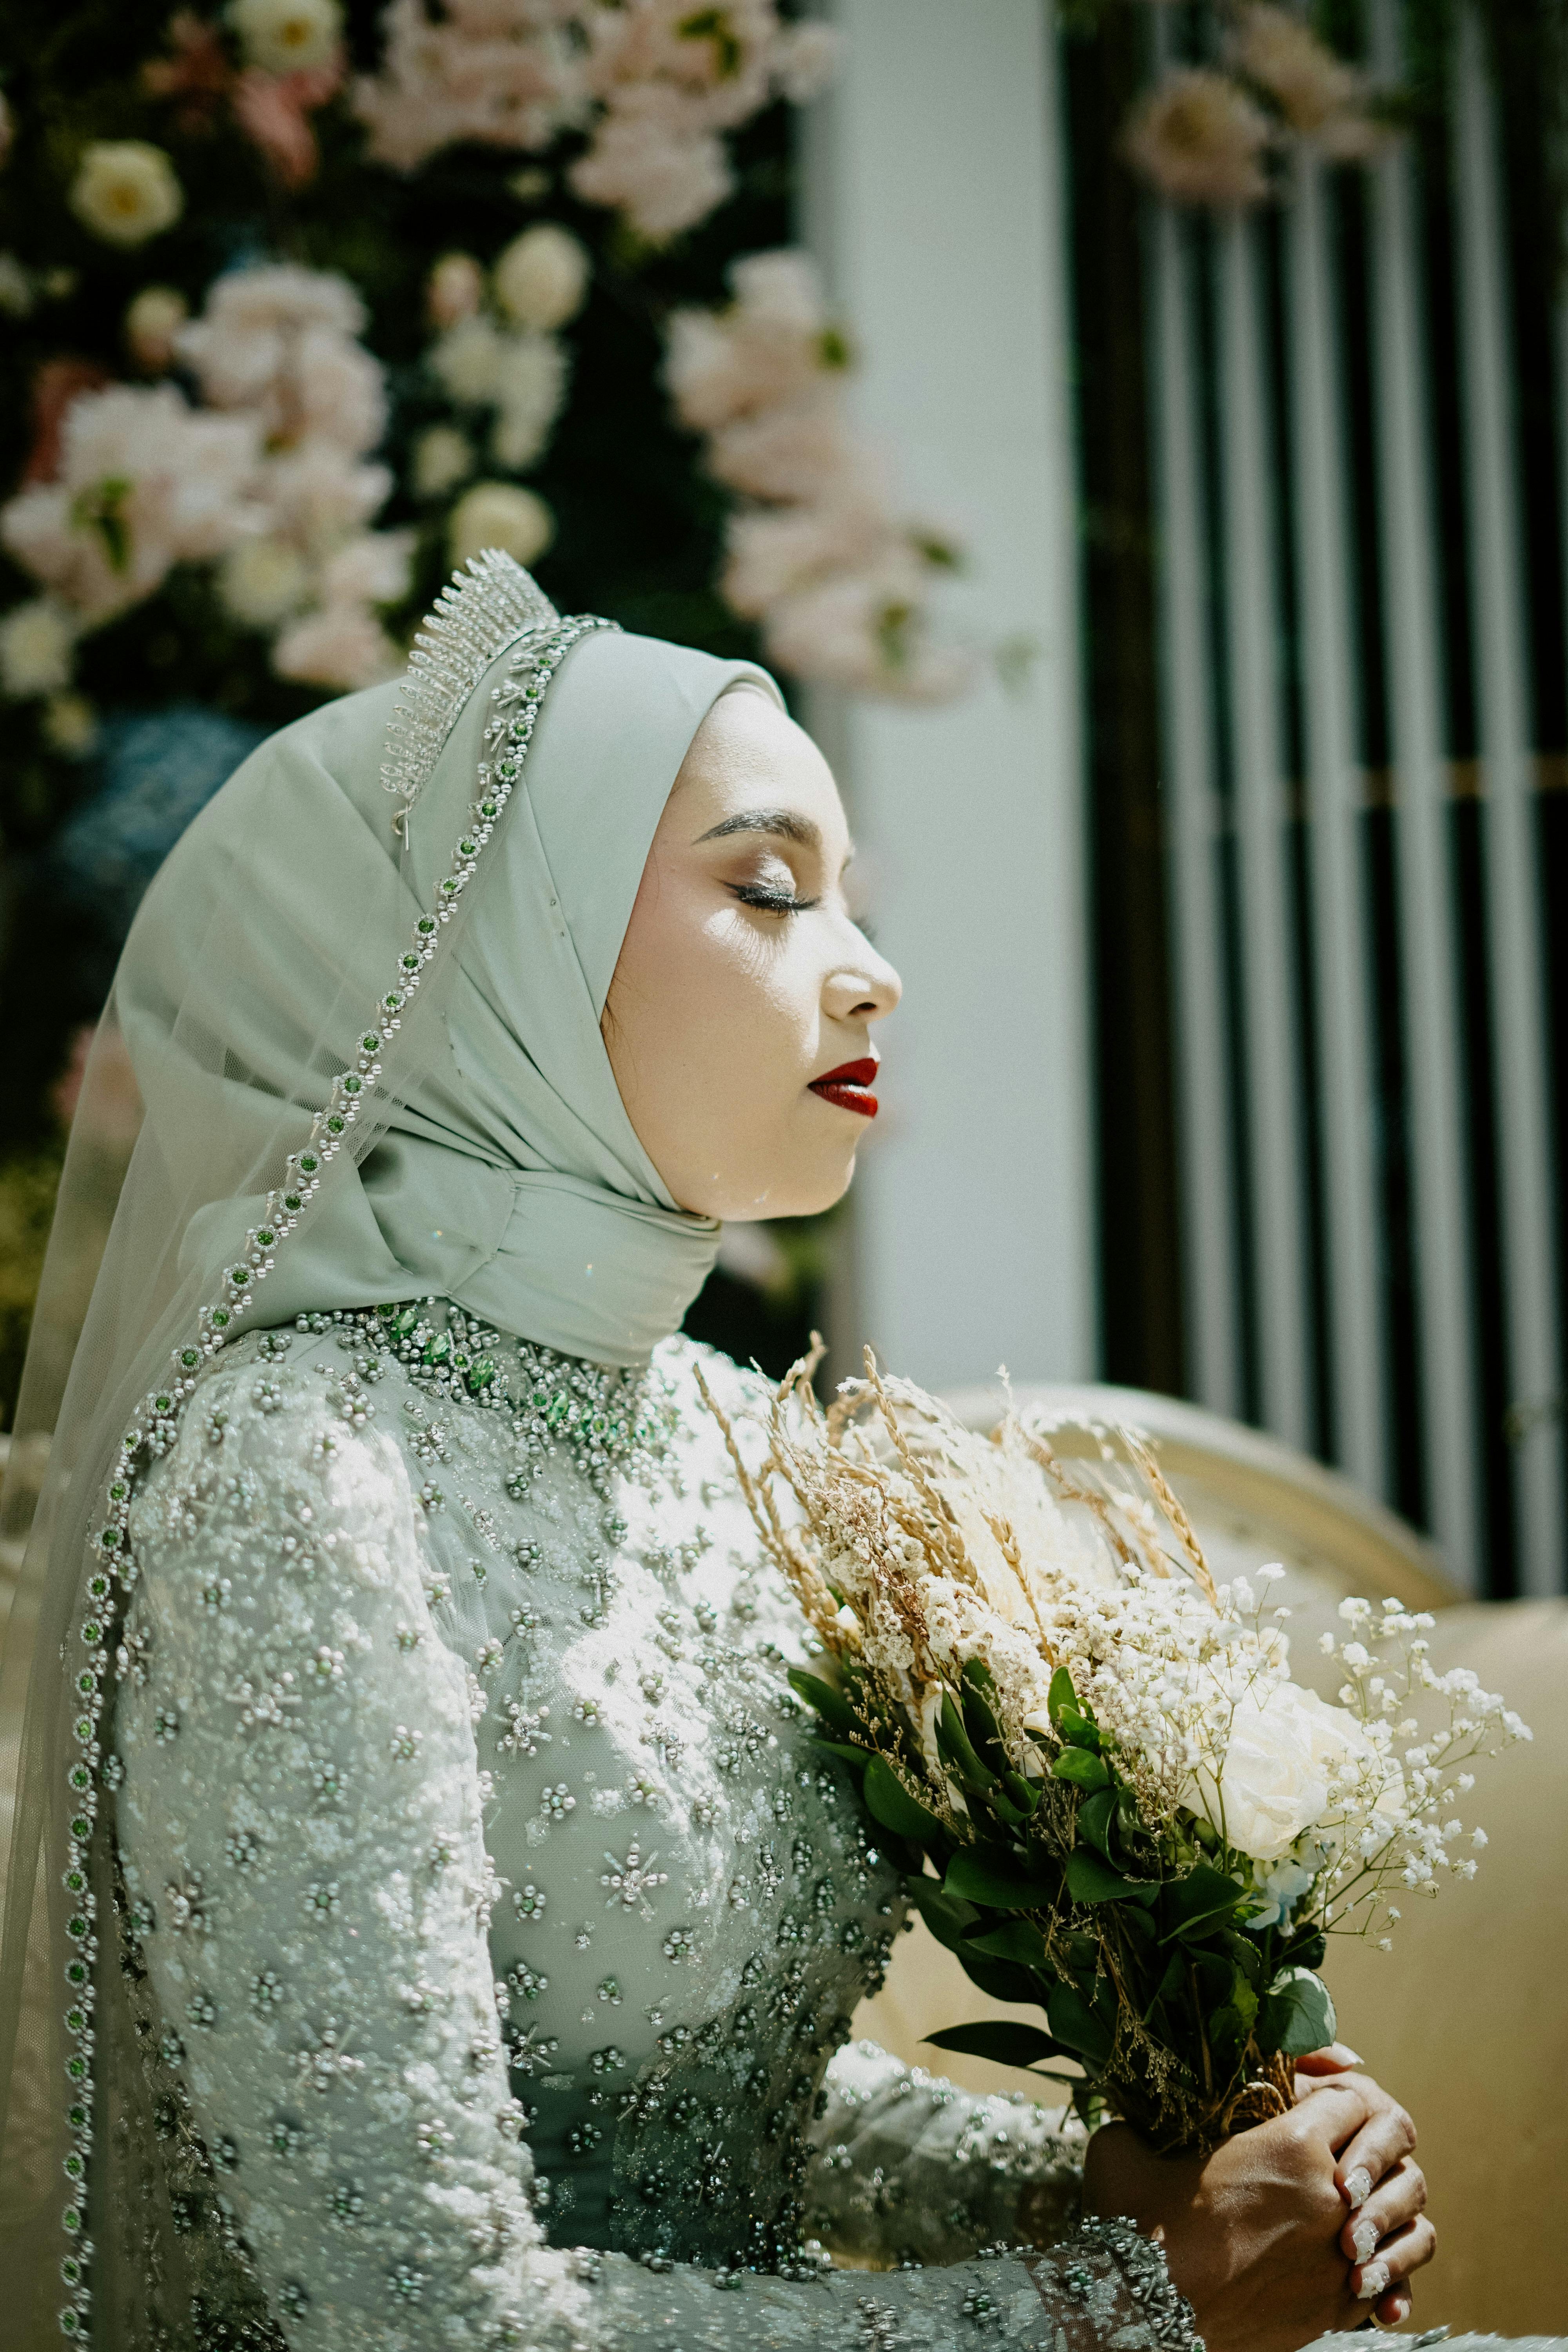 Islamic Wedding Ideas for 2022/Muslim wedding dress with niqab/Bridal with  Hijab/Niqab Bridal Dress - YouTube